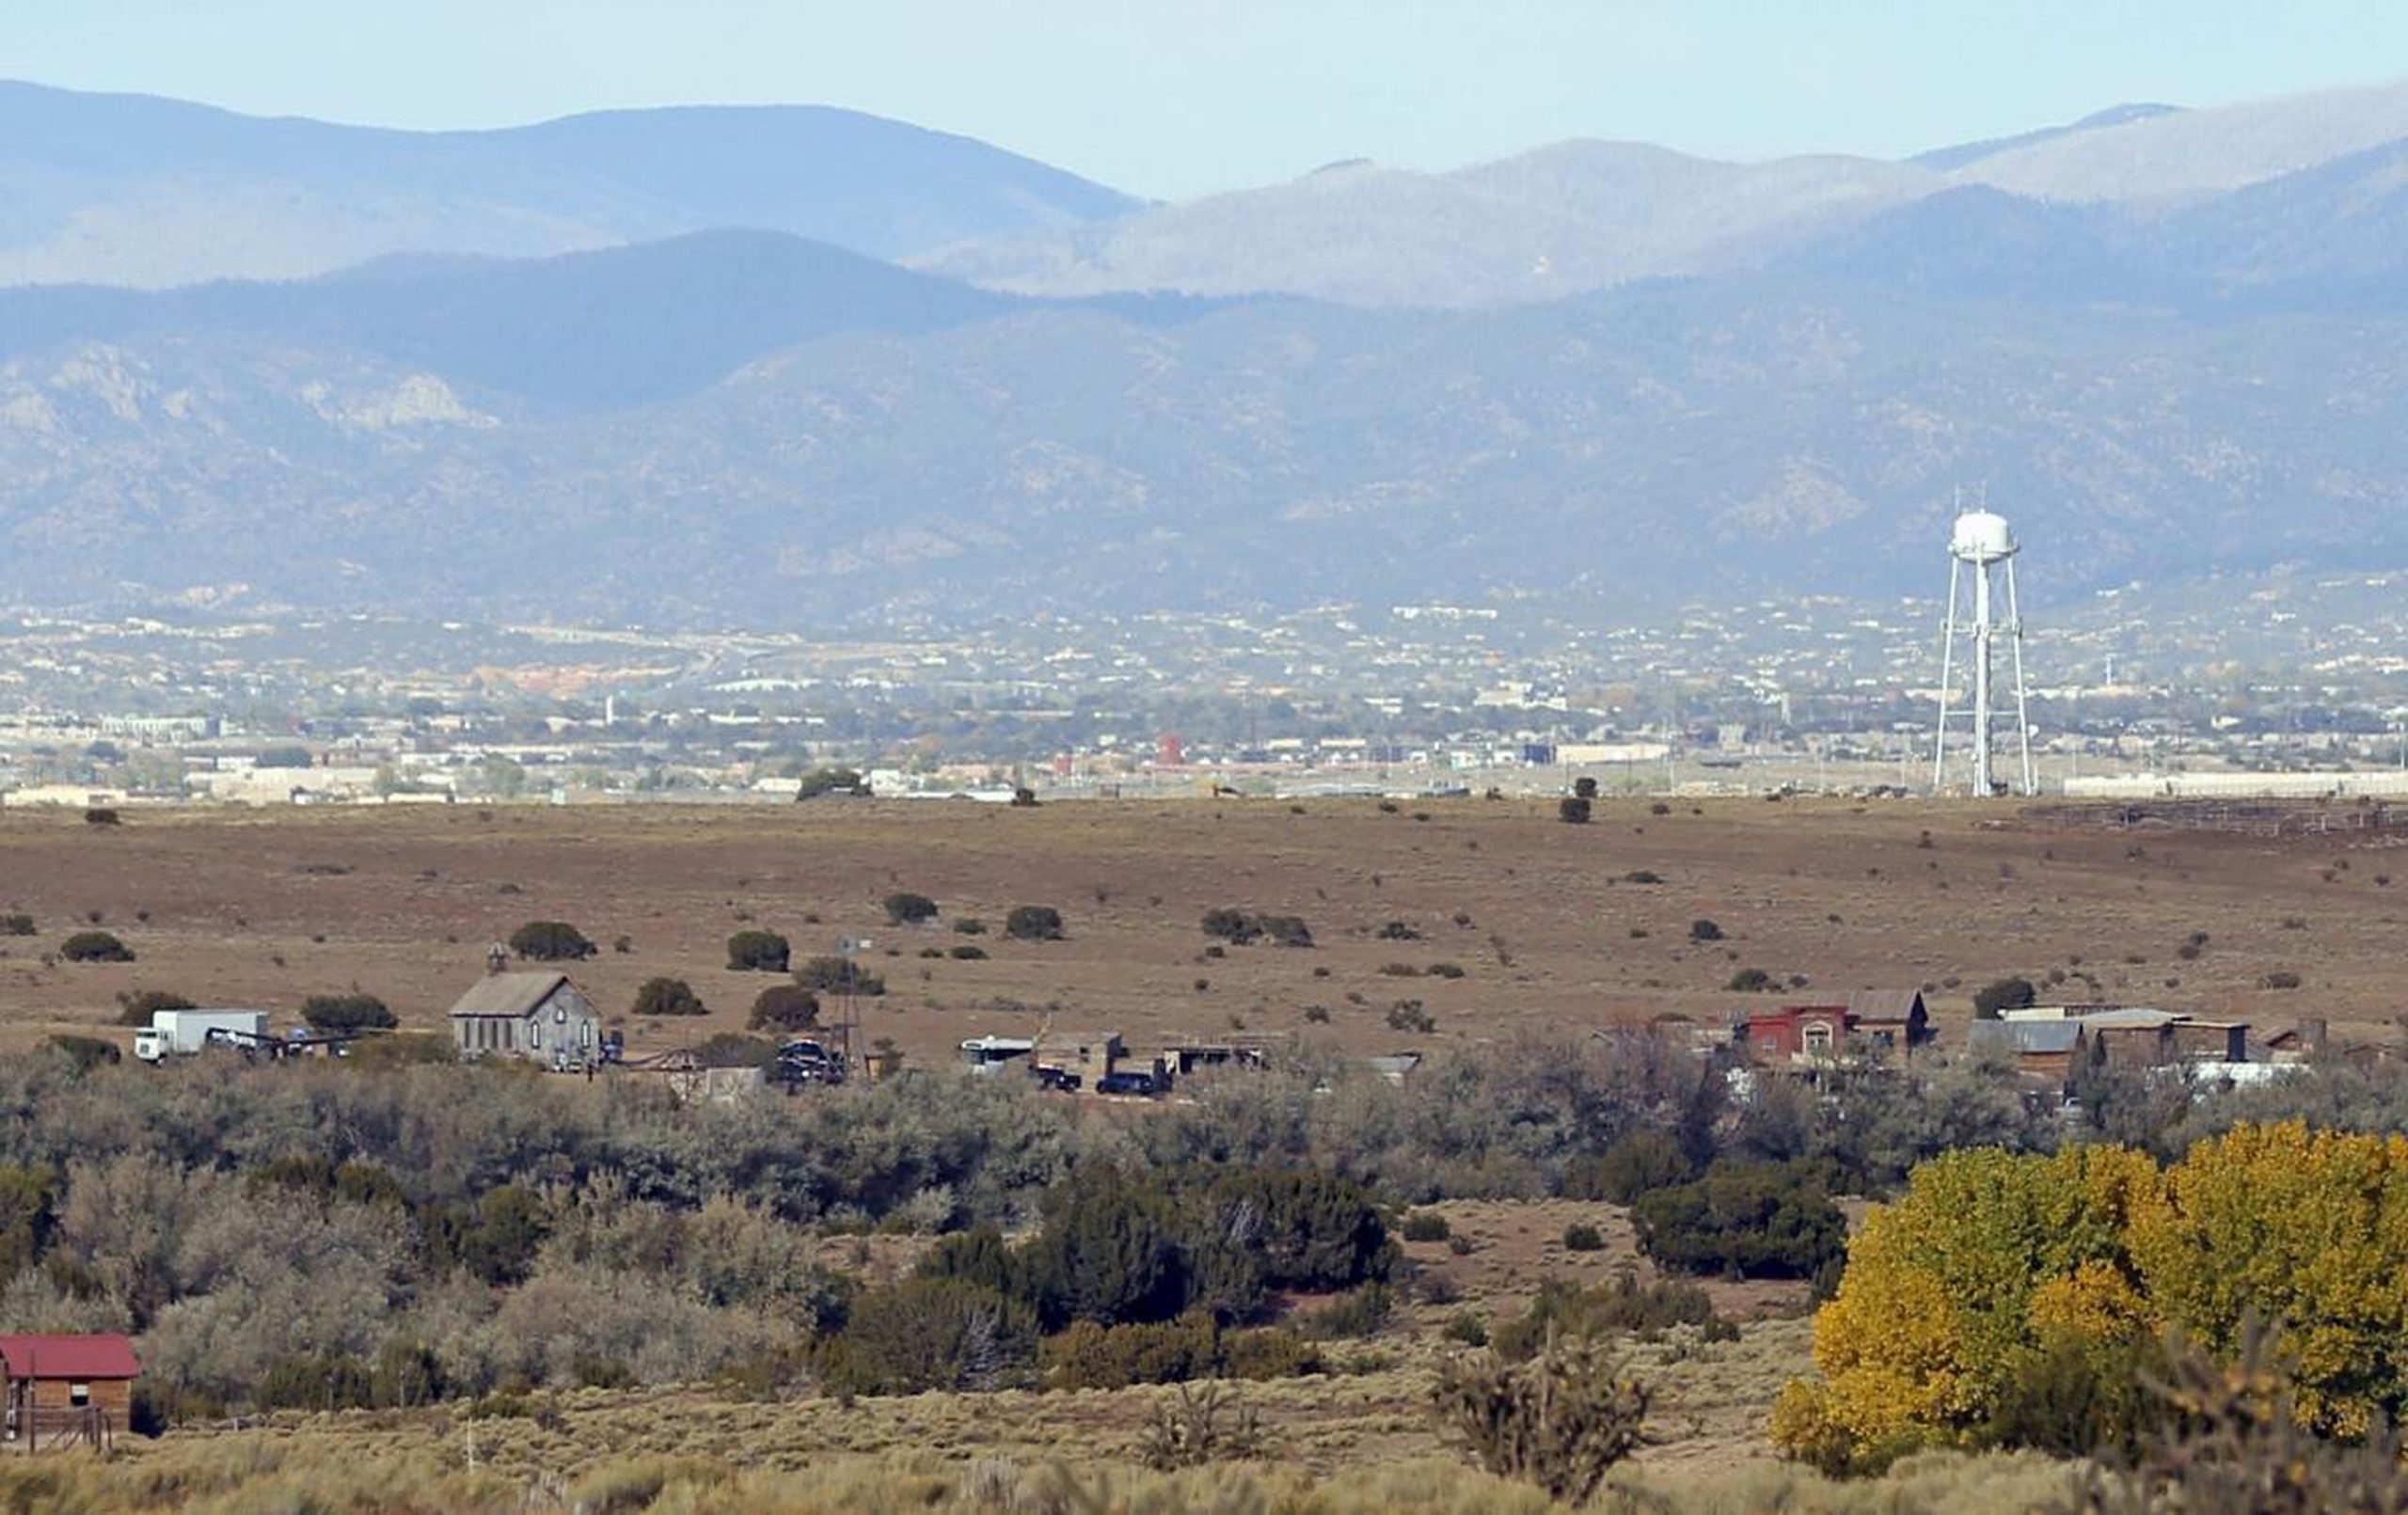 Blick auf die Bonanza Creek Ranch in der Nähe von Santa Fe. Hier passierte der tödliche Vorfall.